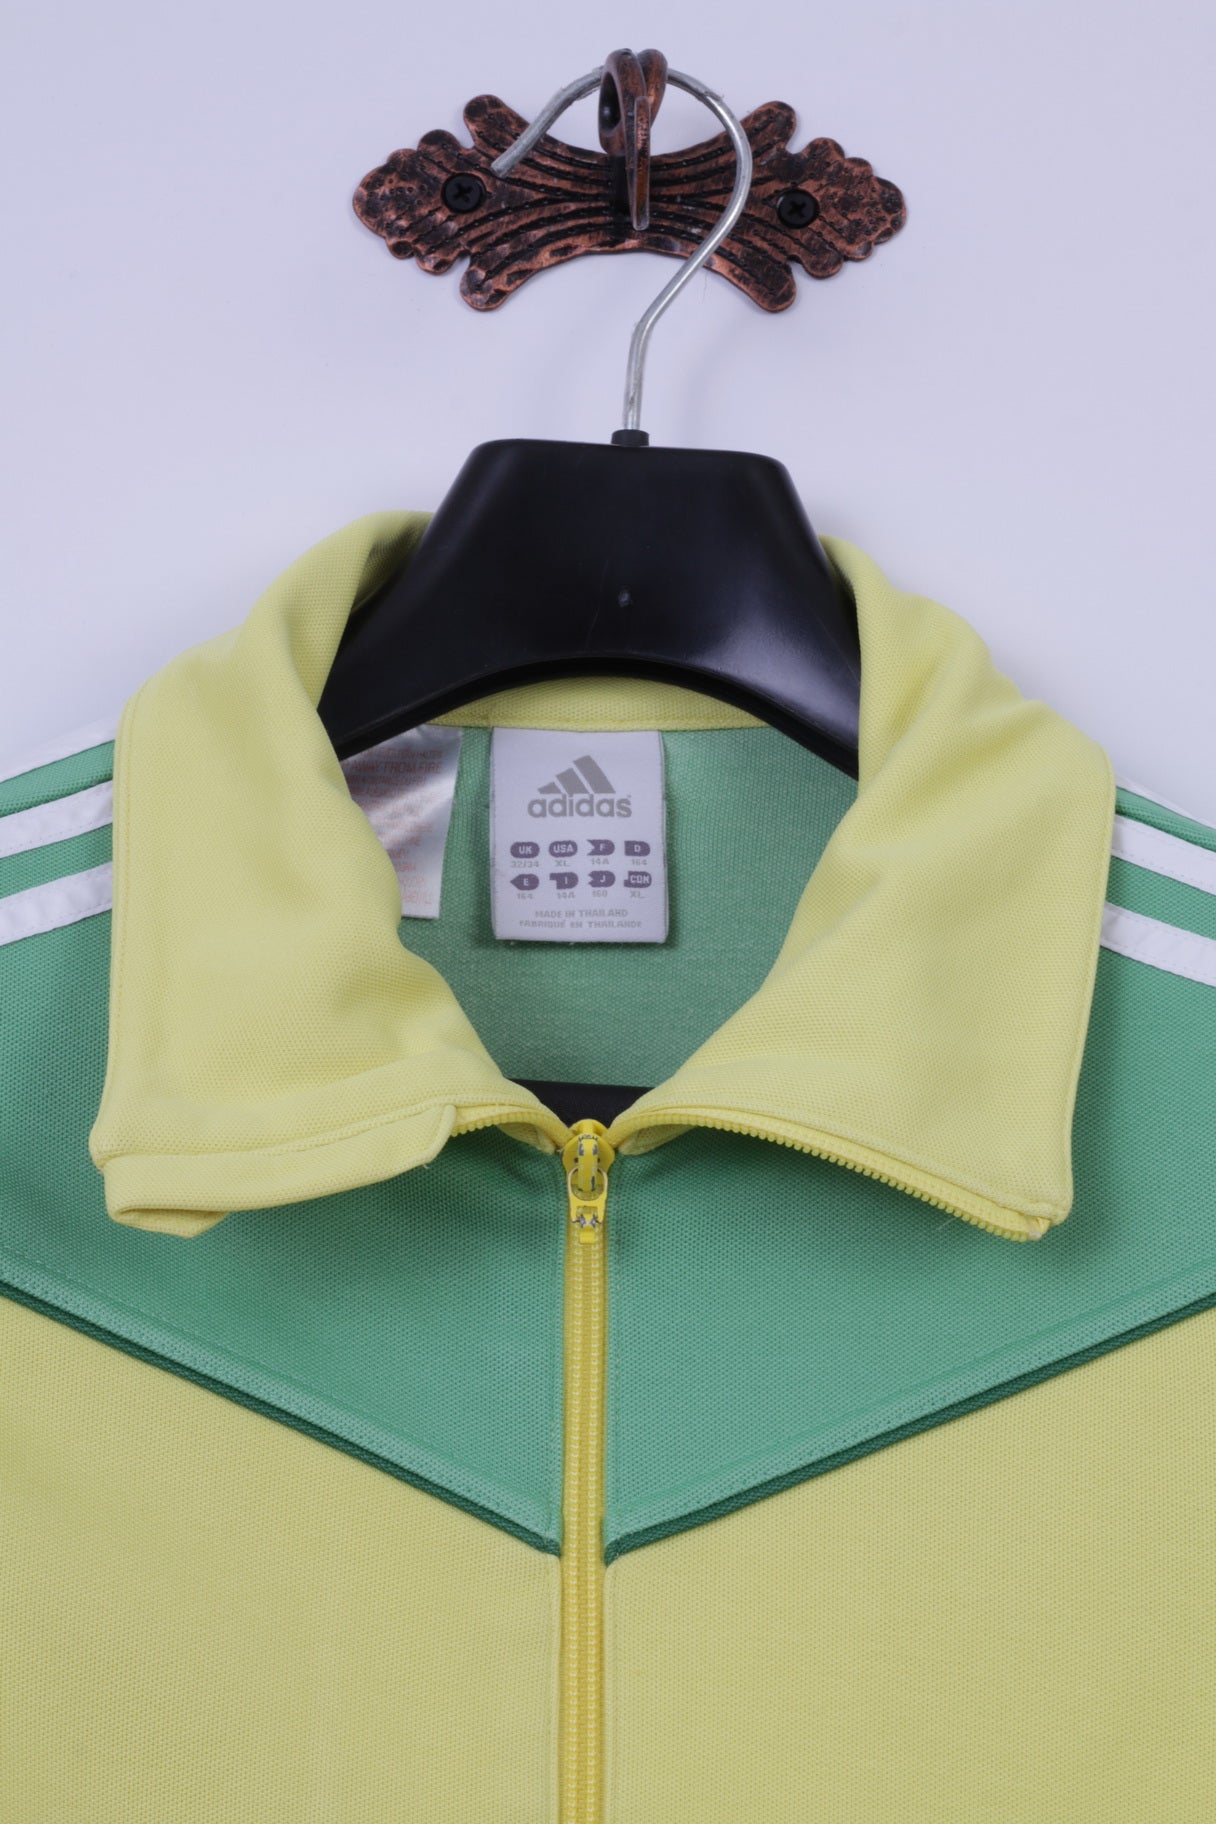 Felpa Adidas da ragazza 14 anni 164, felpa gialla con zip e 3 strisce, unisex